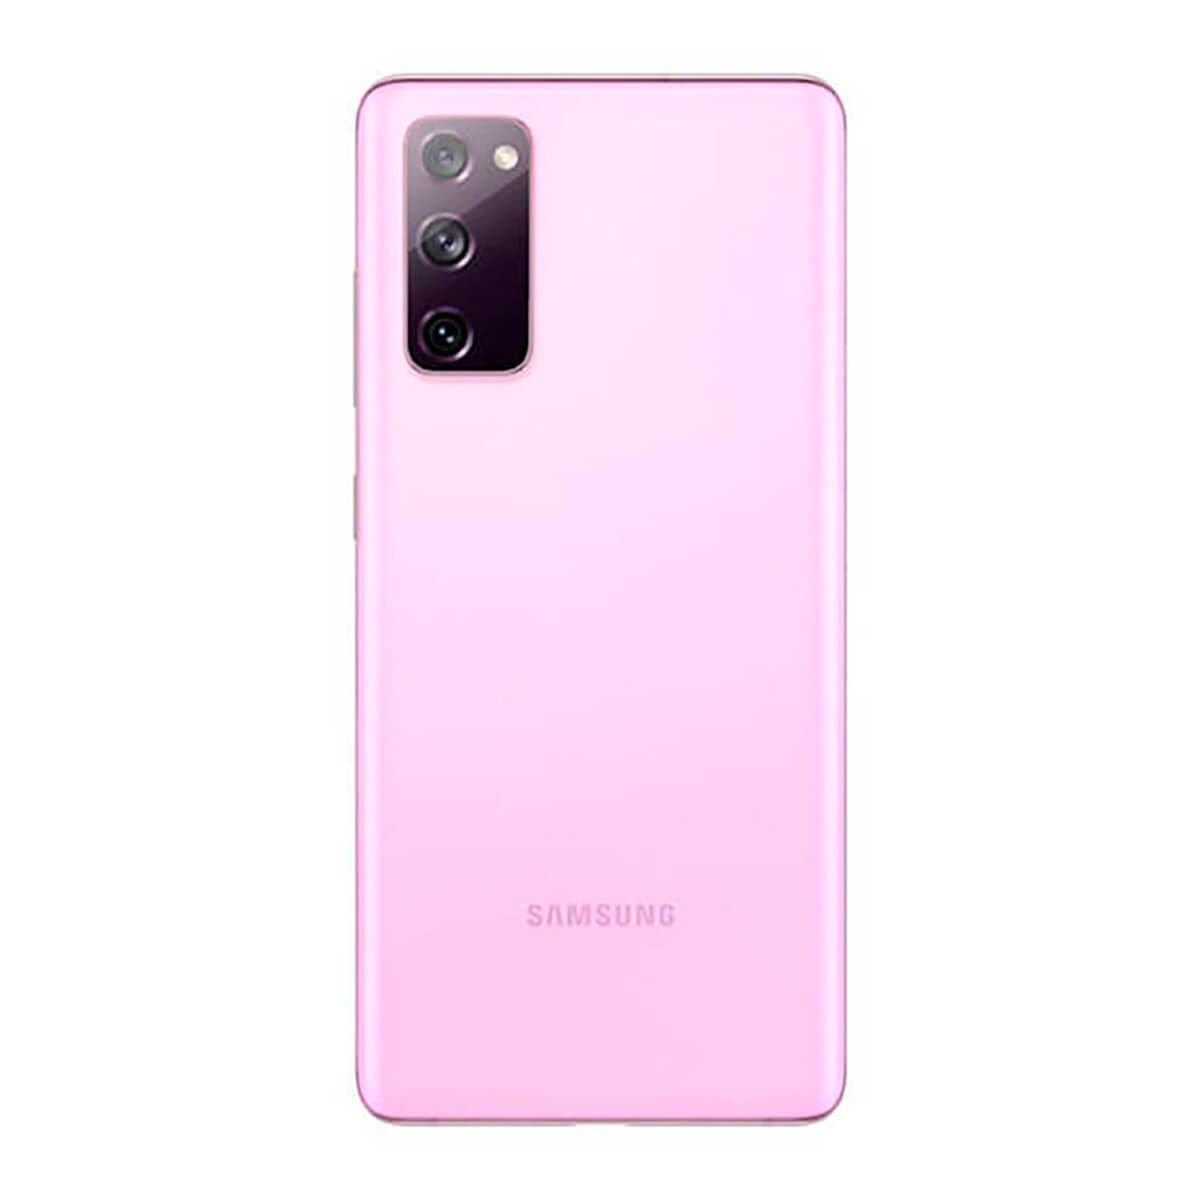 Samsung Galaxy S20 FE 5G 8GB/256GB Violeta (Lavander) Dual SIM G781B – DESPRECINTADO